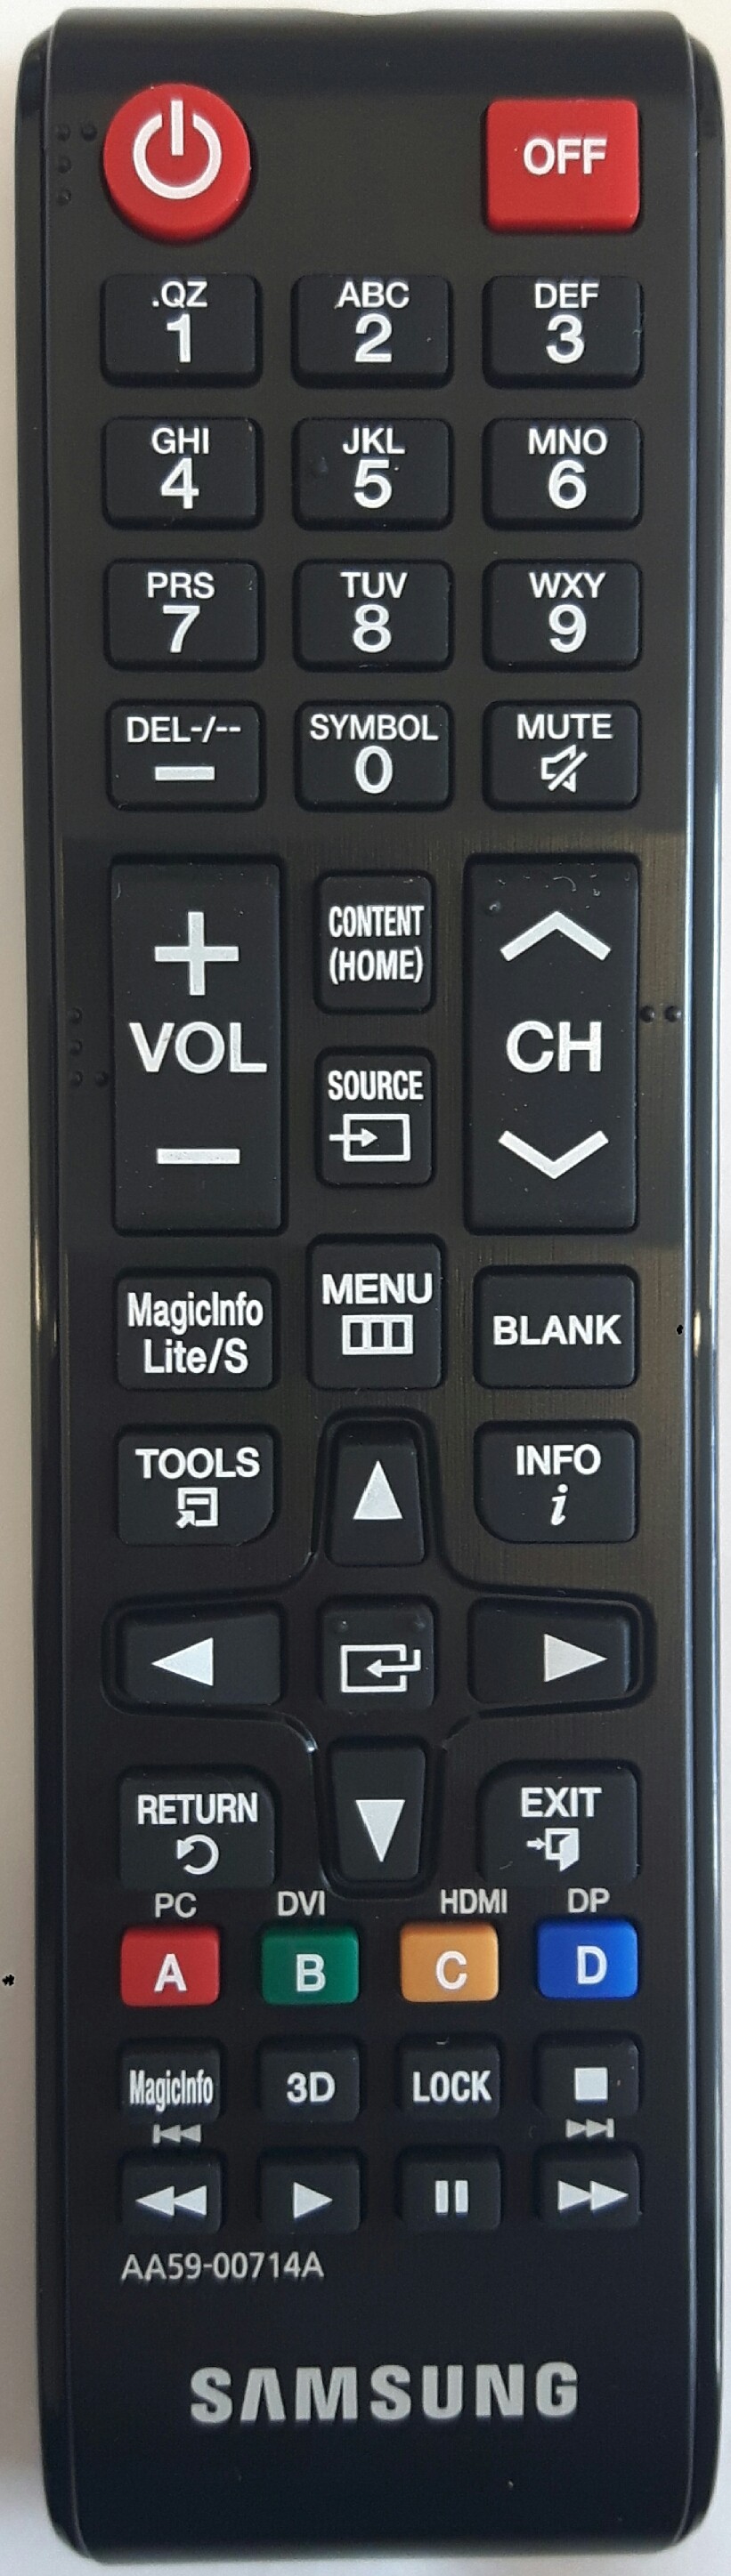 SAMSUNG ME40C Remote Control Original